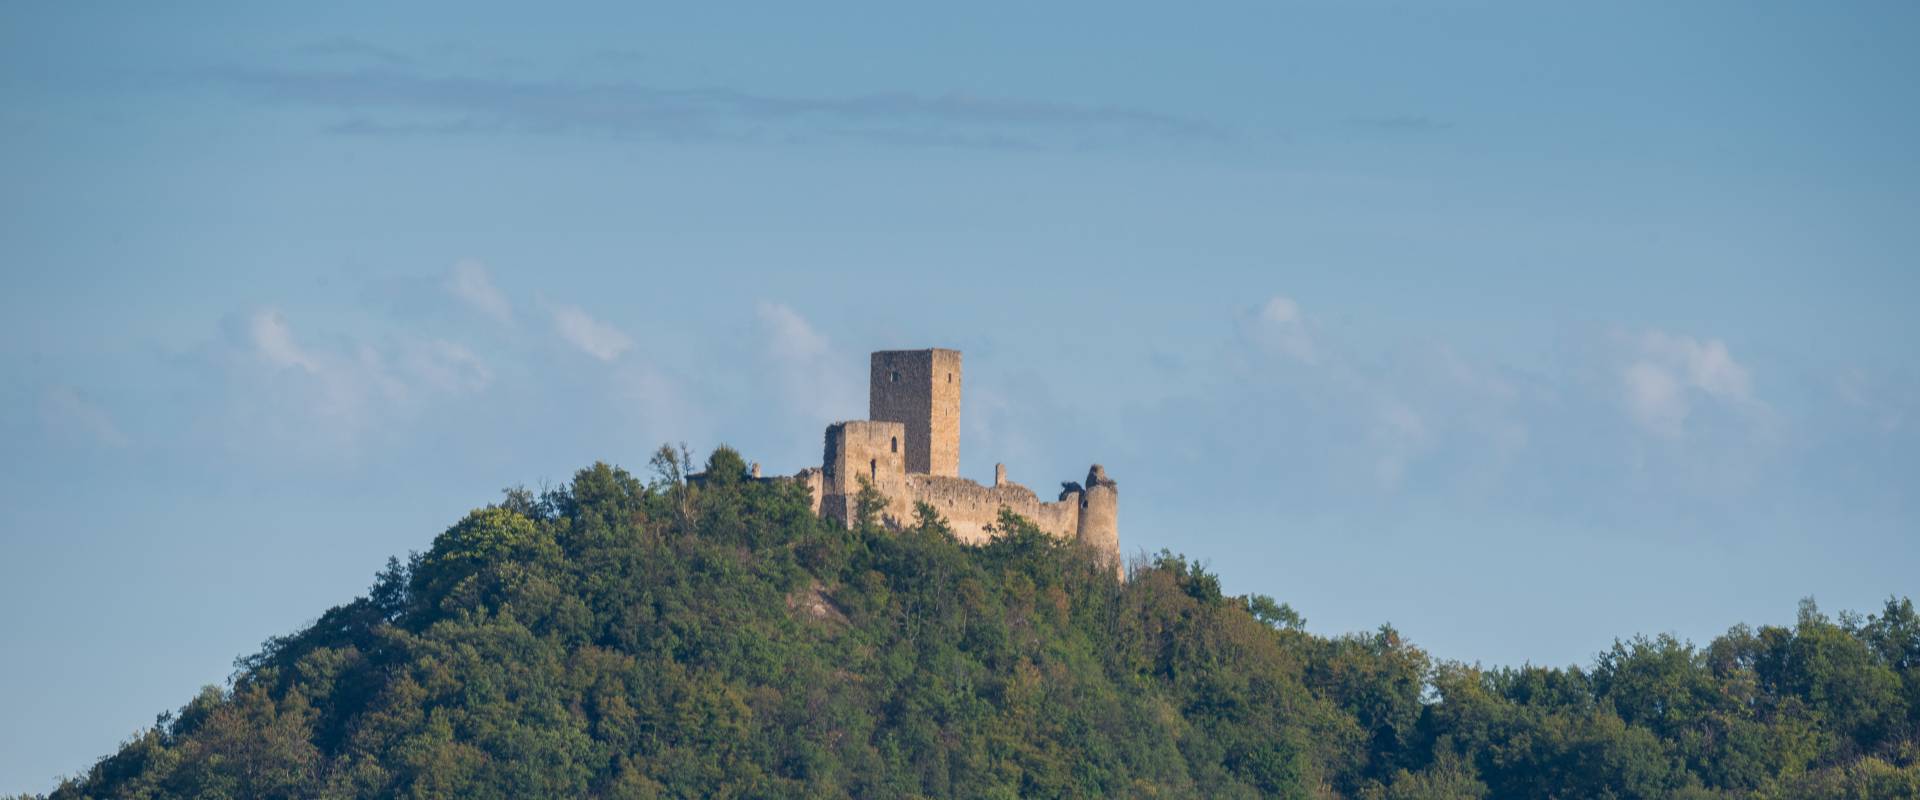 Rocca di Carpineti foto di Lugarex